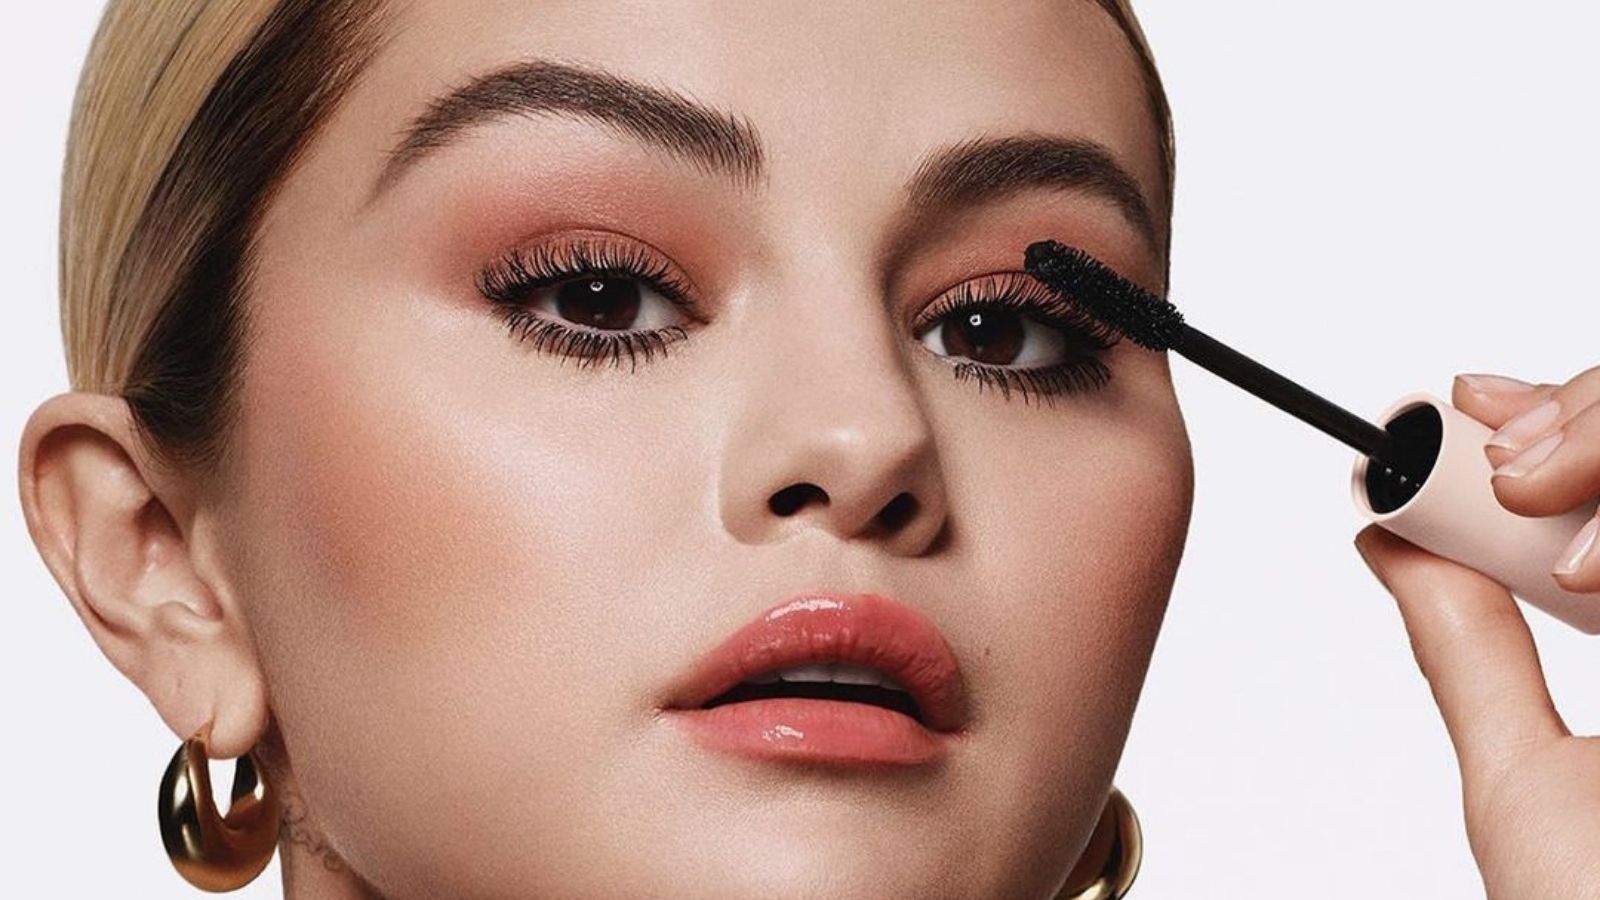 Rare Beauty by Selena Gomez Debuts in The Australian Beauty Market